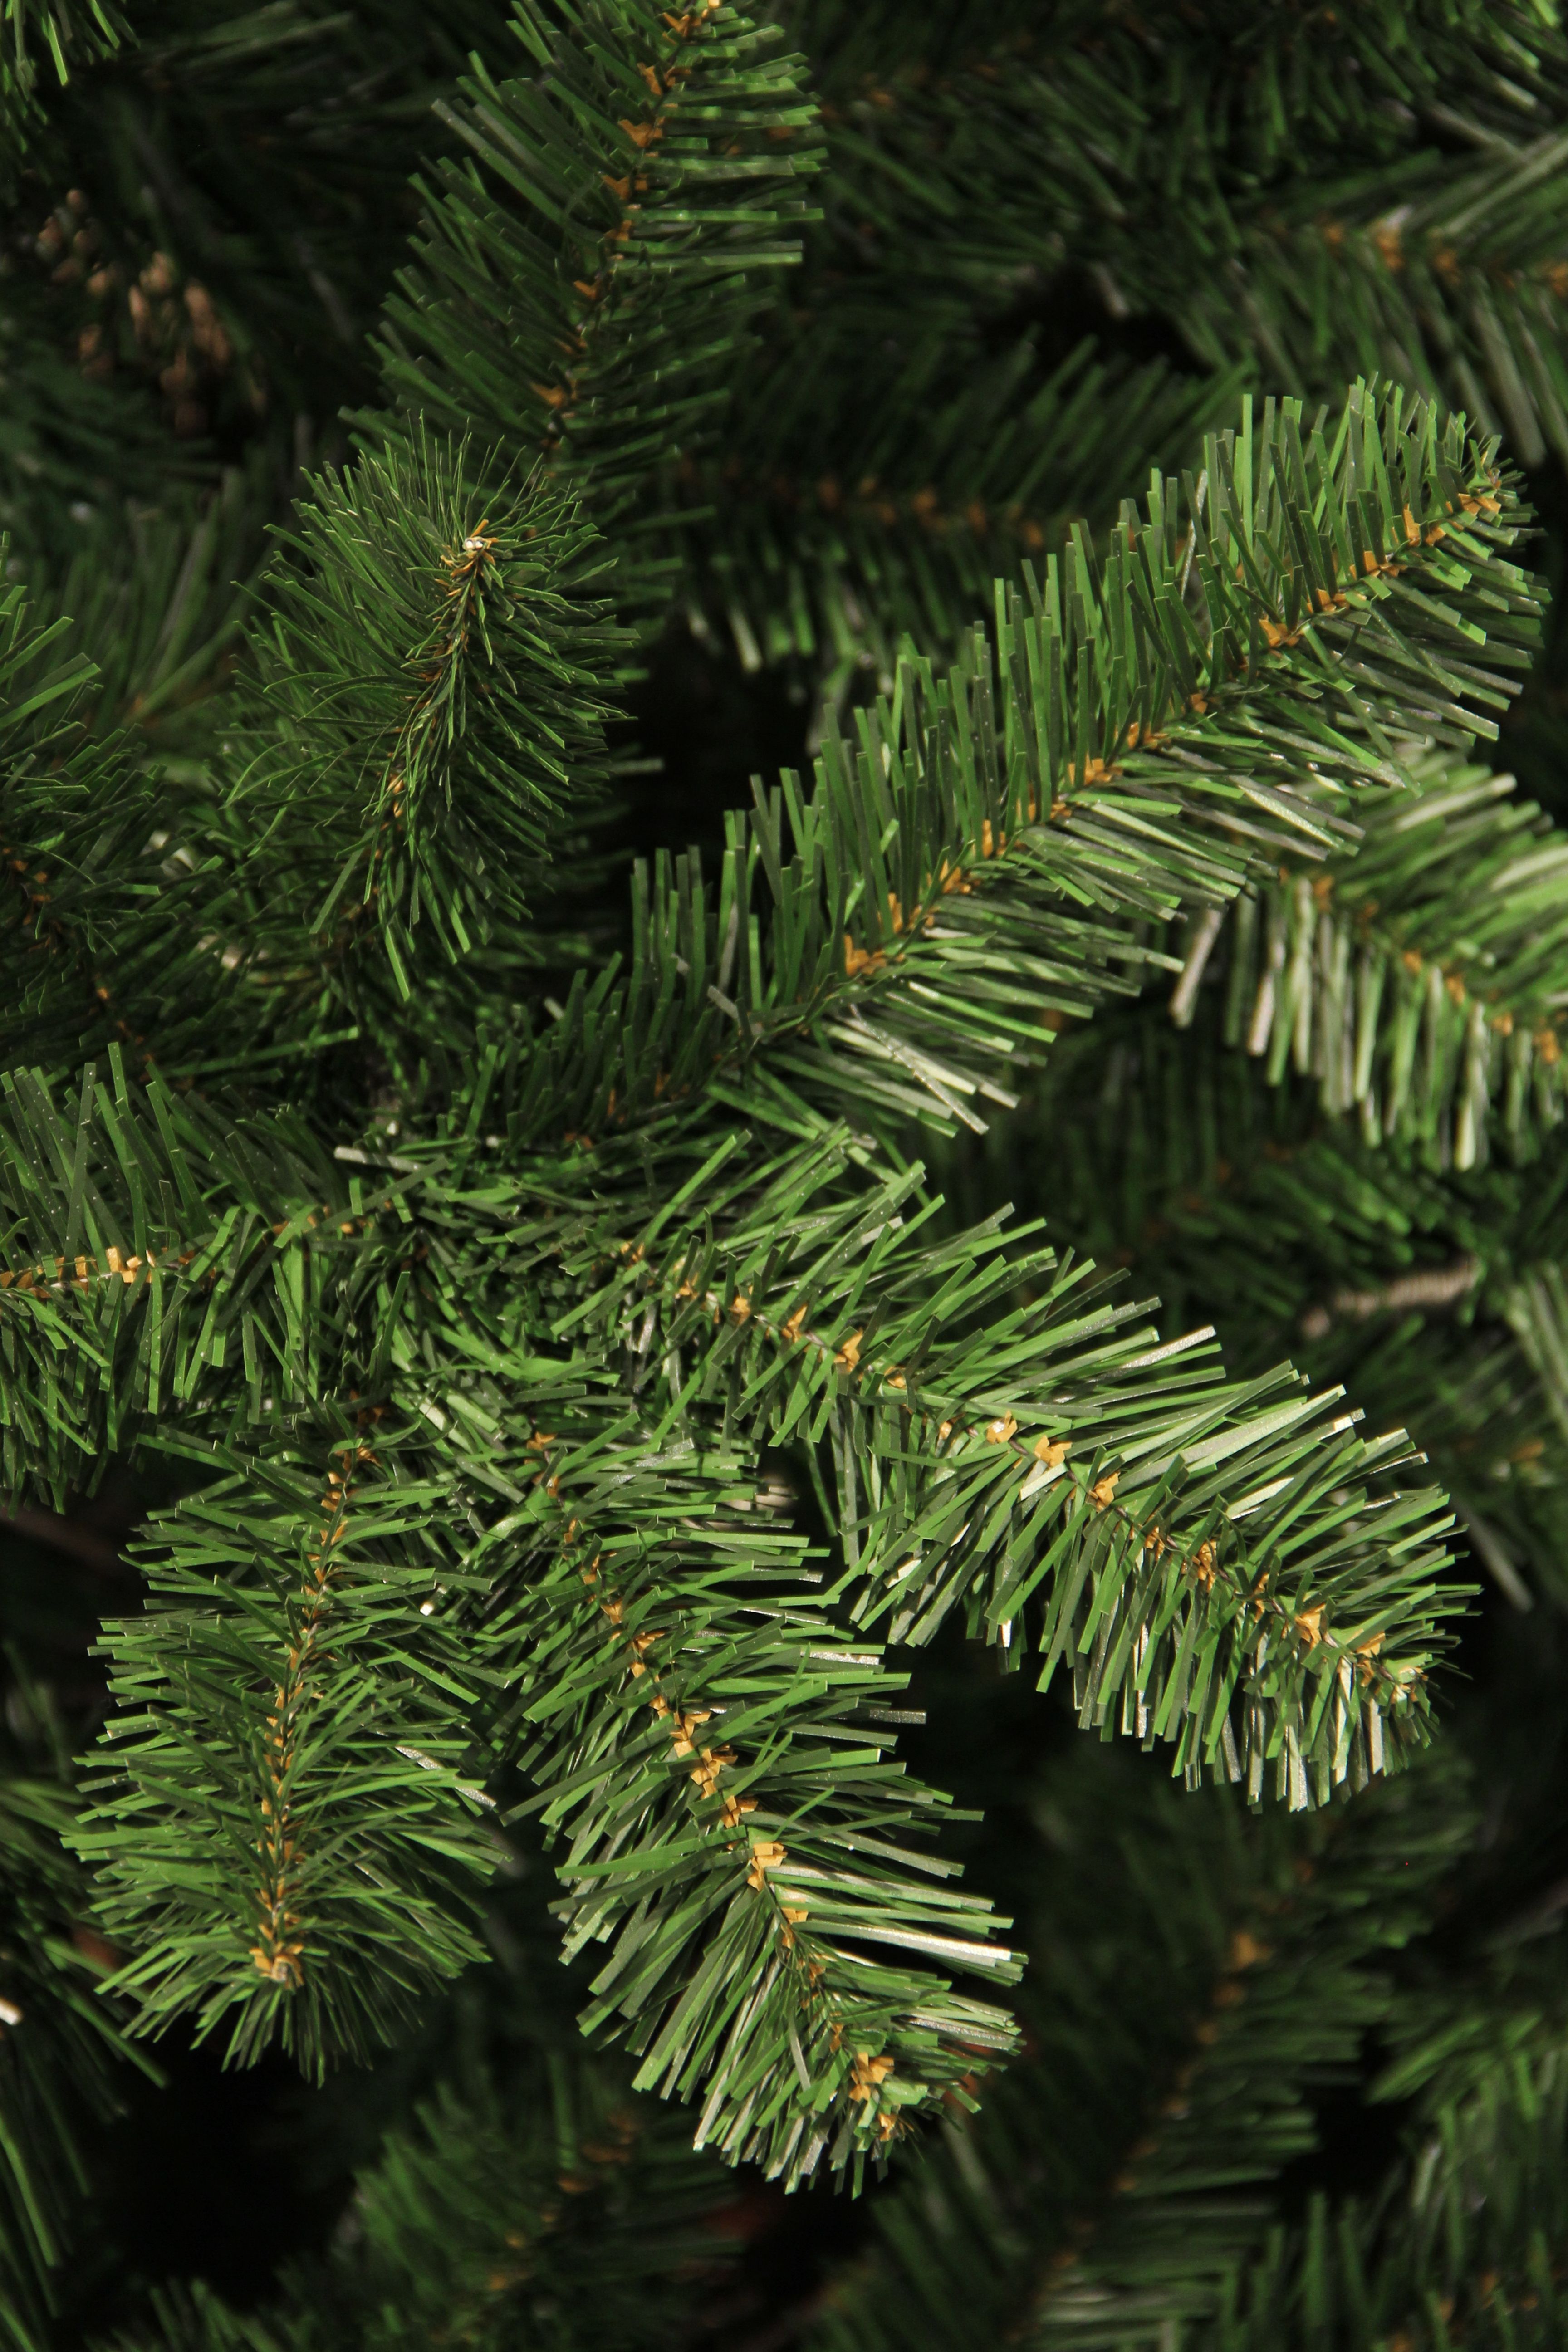 Black Box Trees - Christmas Tree